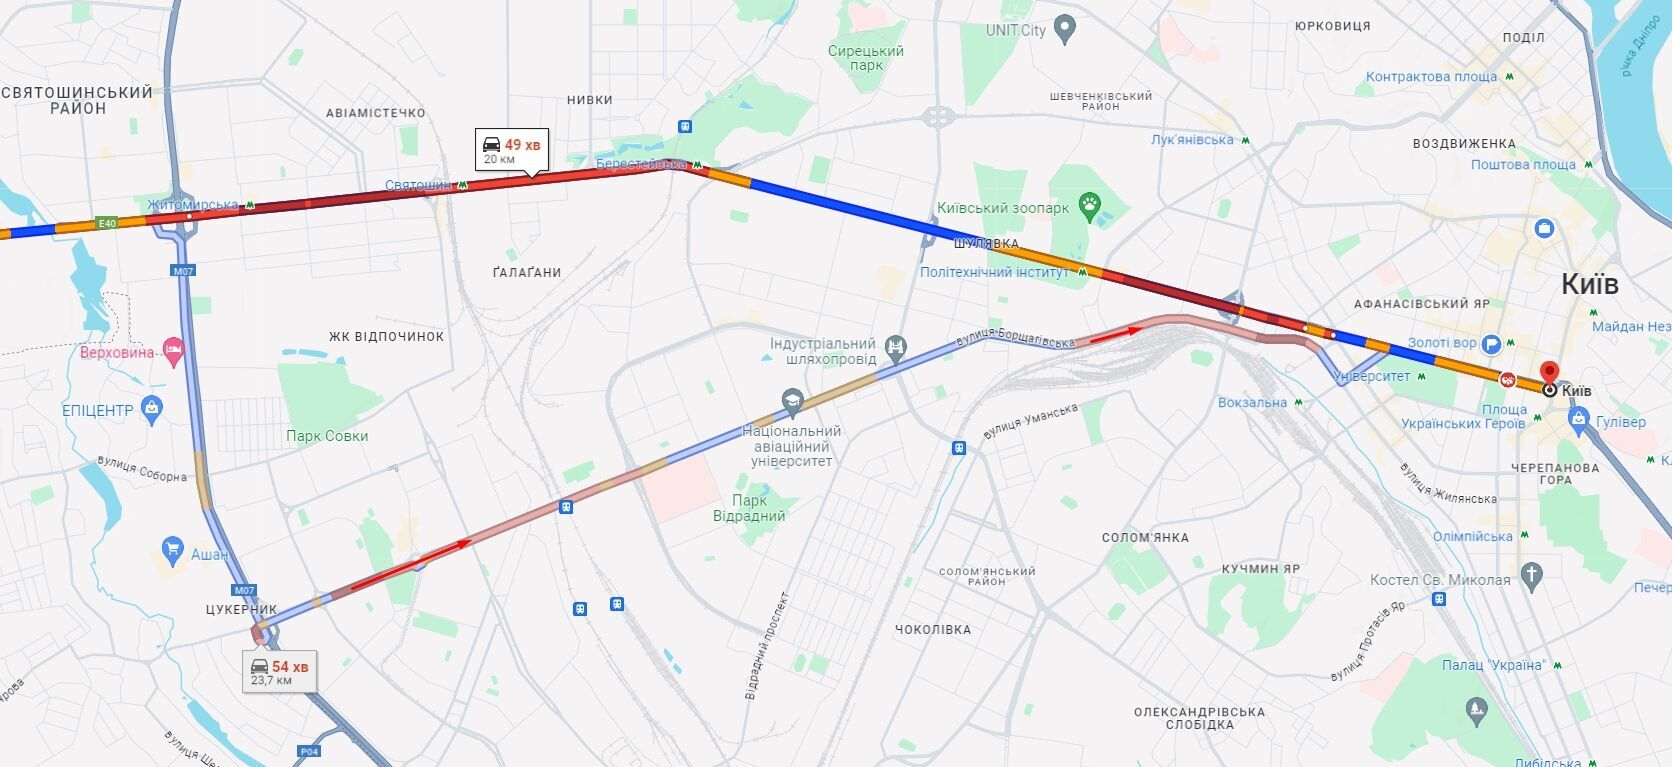 На дорогах Киева утром образовались пробки: где не проехать. Карта